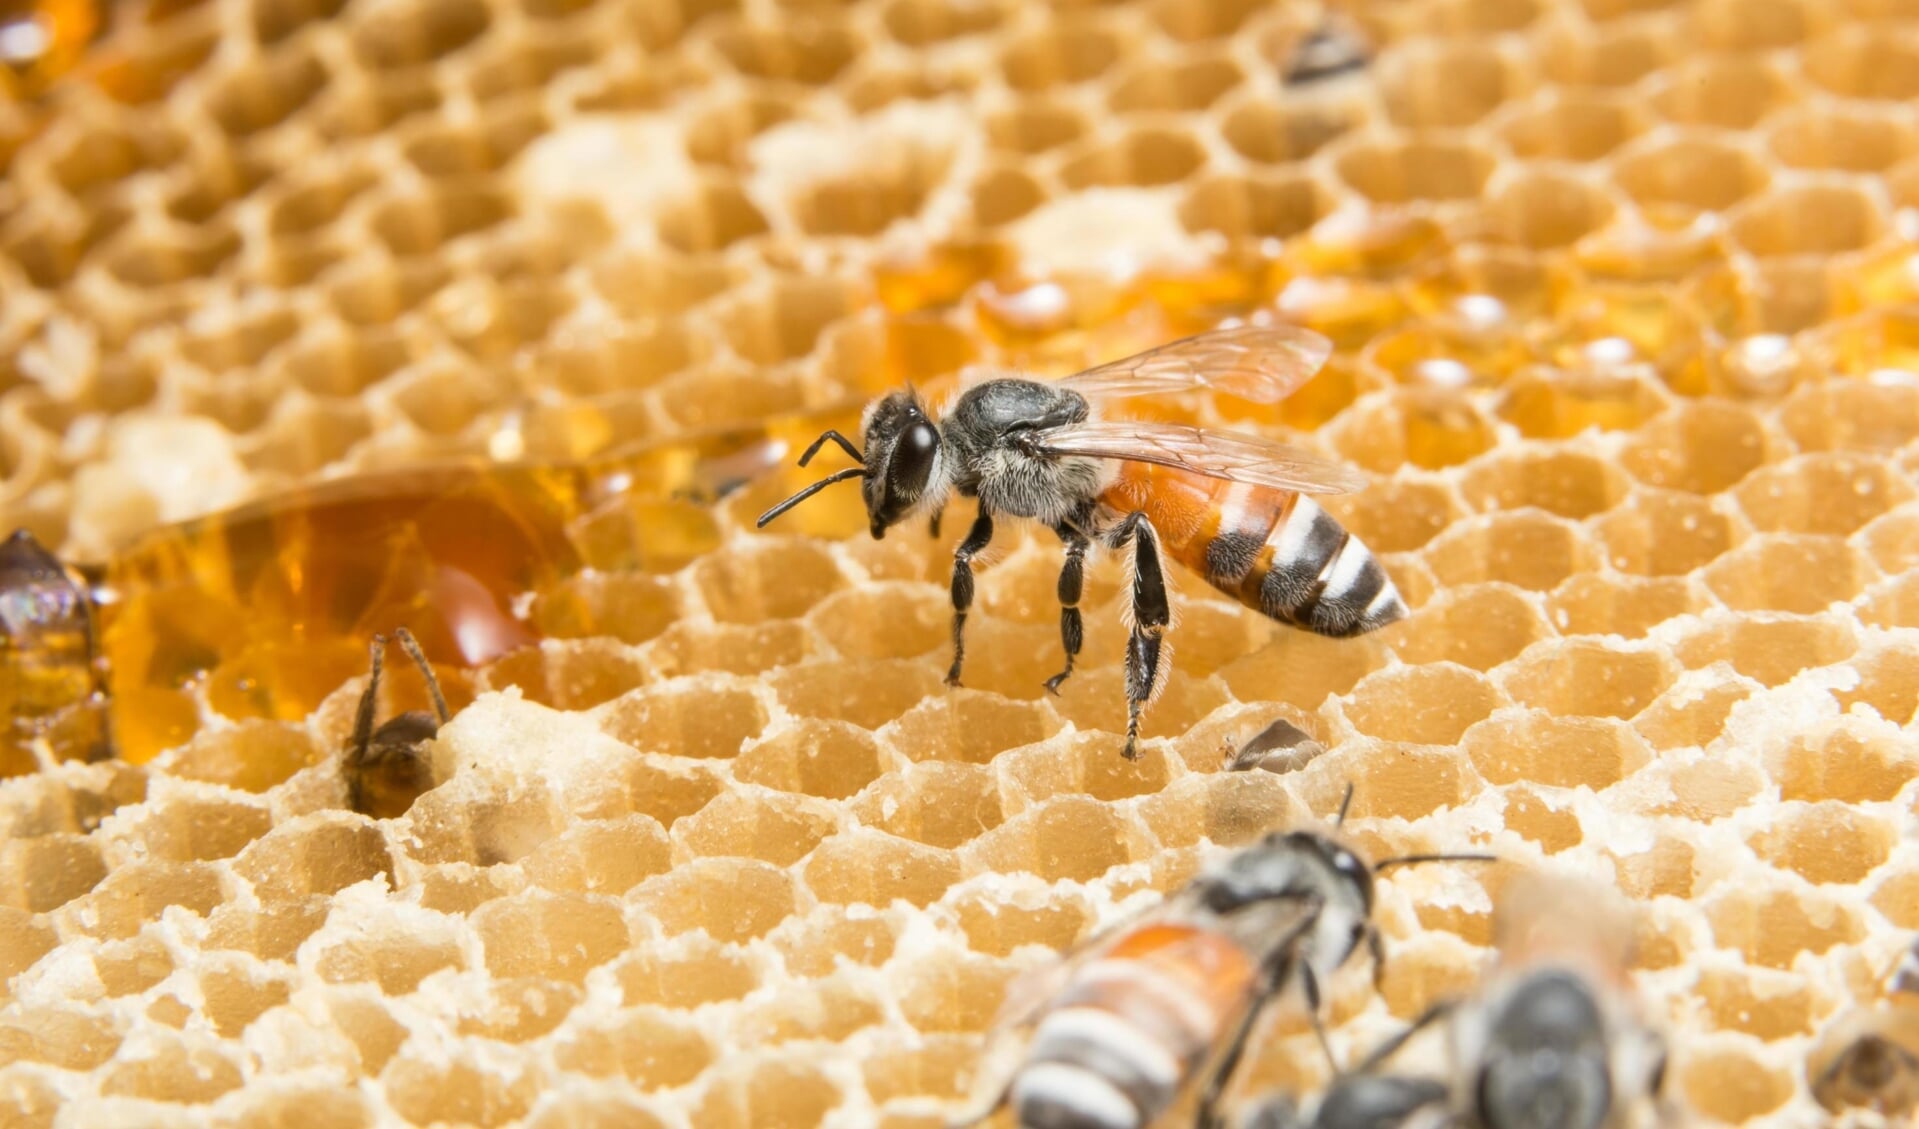 Bijen op een honingraat.